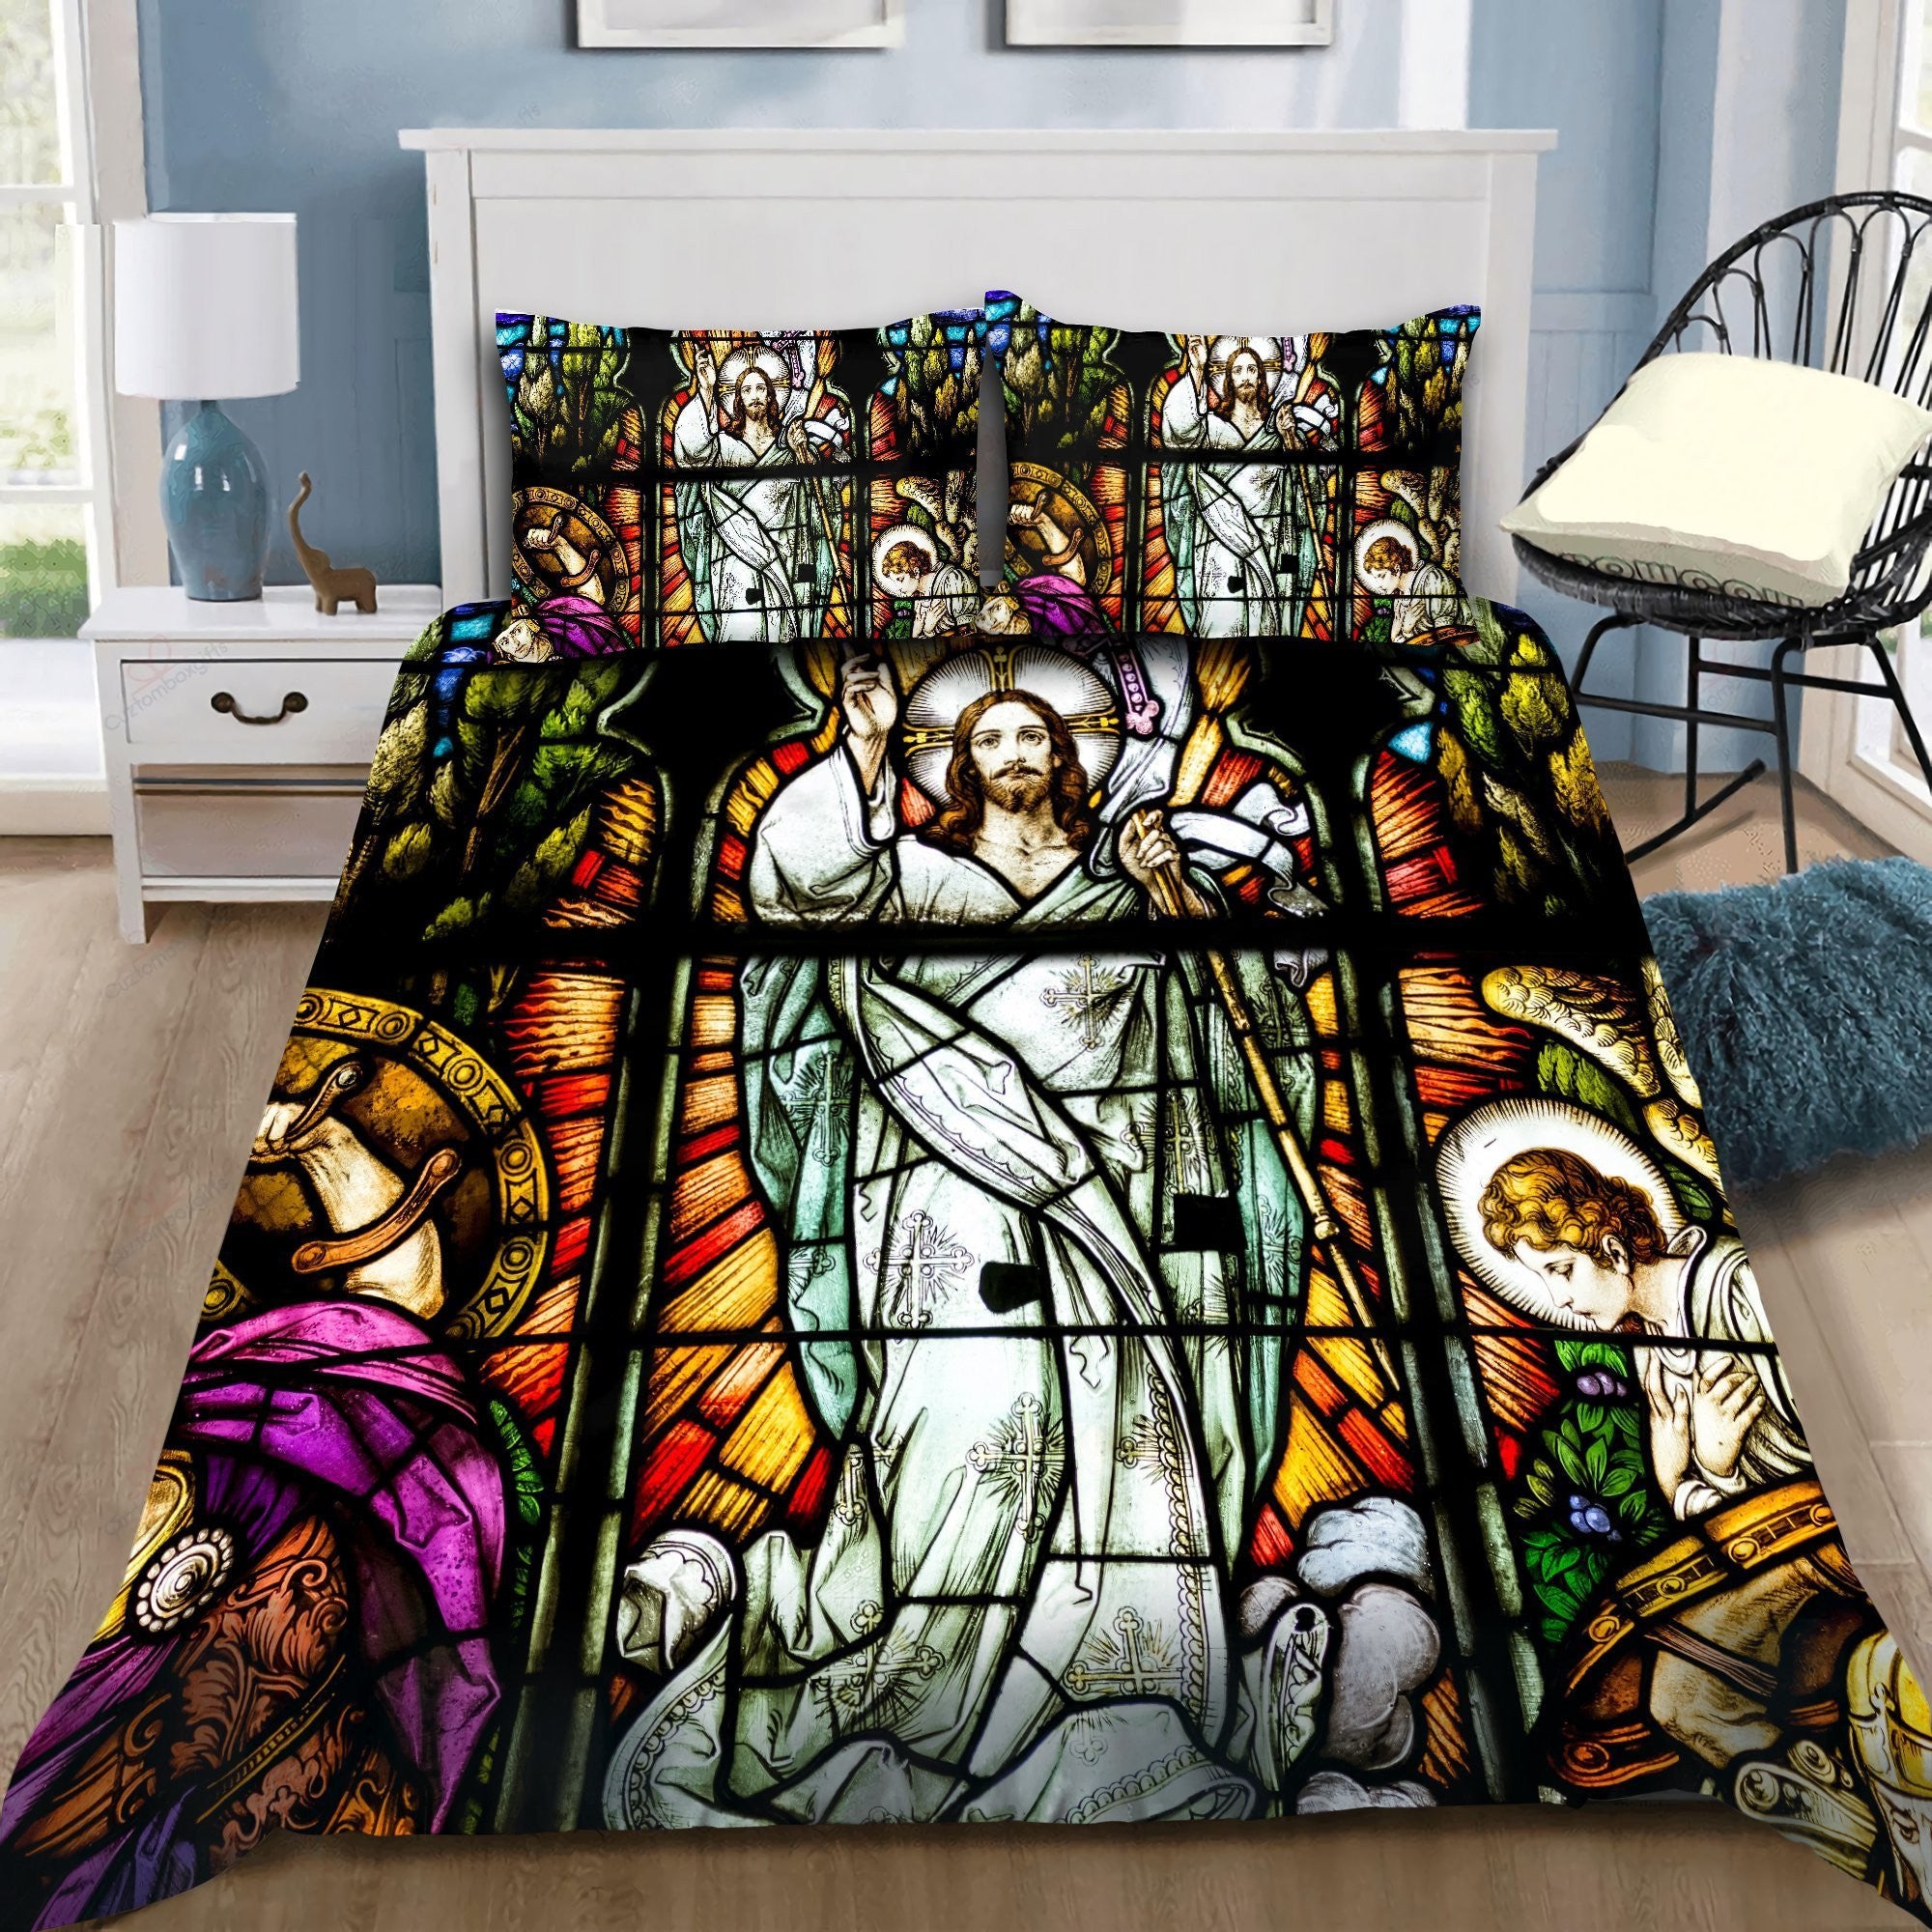 God Jesus Gotic Bedding Set - Christian Bedding Sets